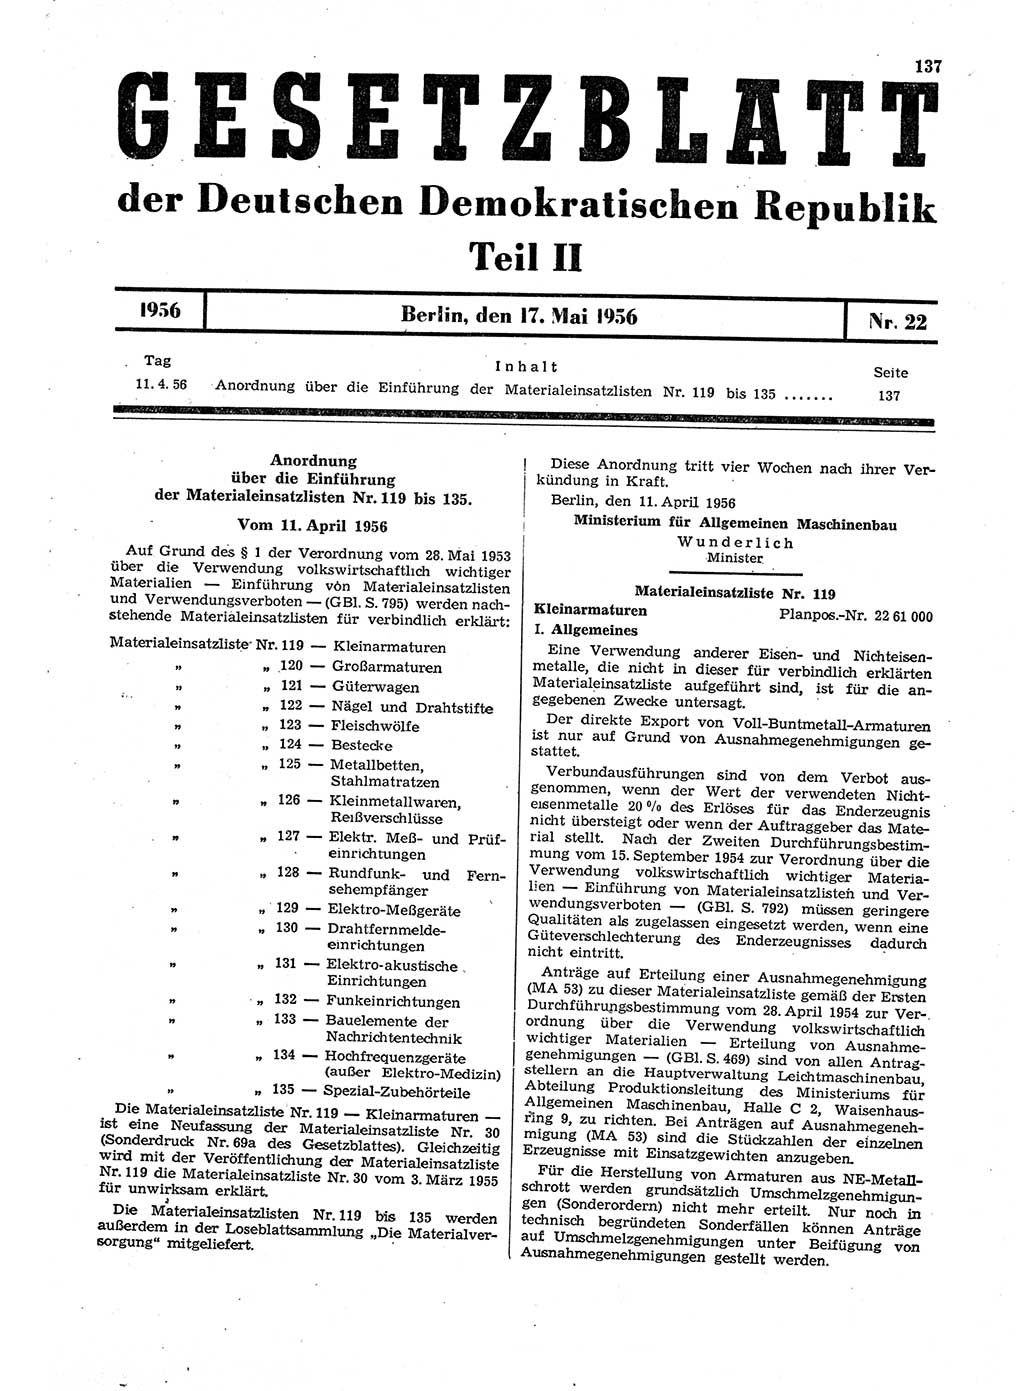 Gesetzblatt (GBl.) der Deutschen Demokratischen Republik (DDR) Teil ⅠⅠ 1956, Seite 137 (GBl. DDR ⅠⅠ 1956, S. 137)